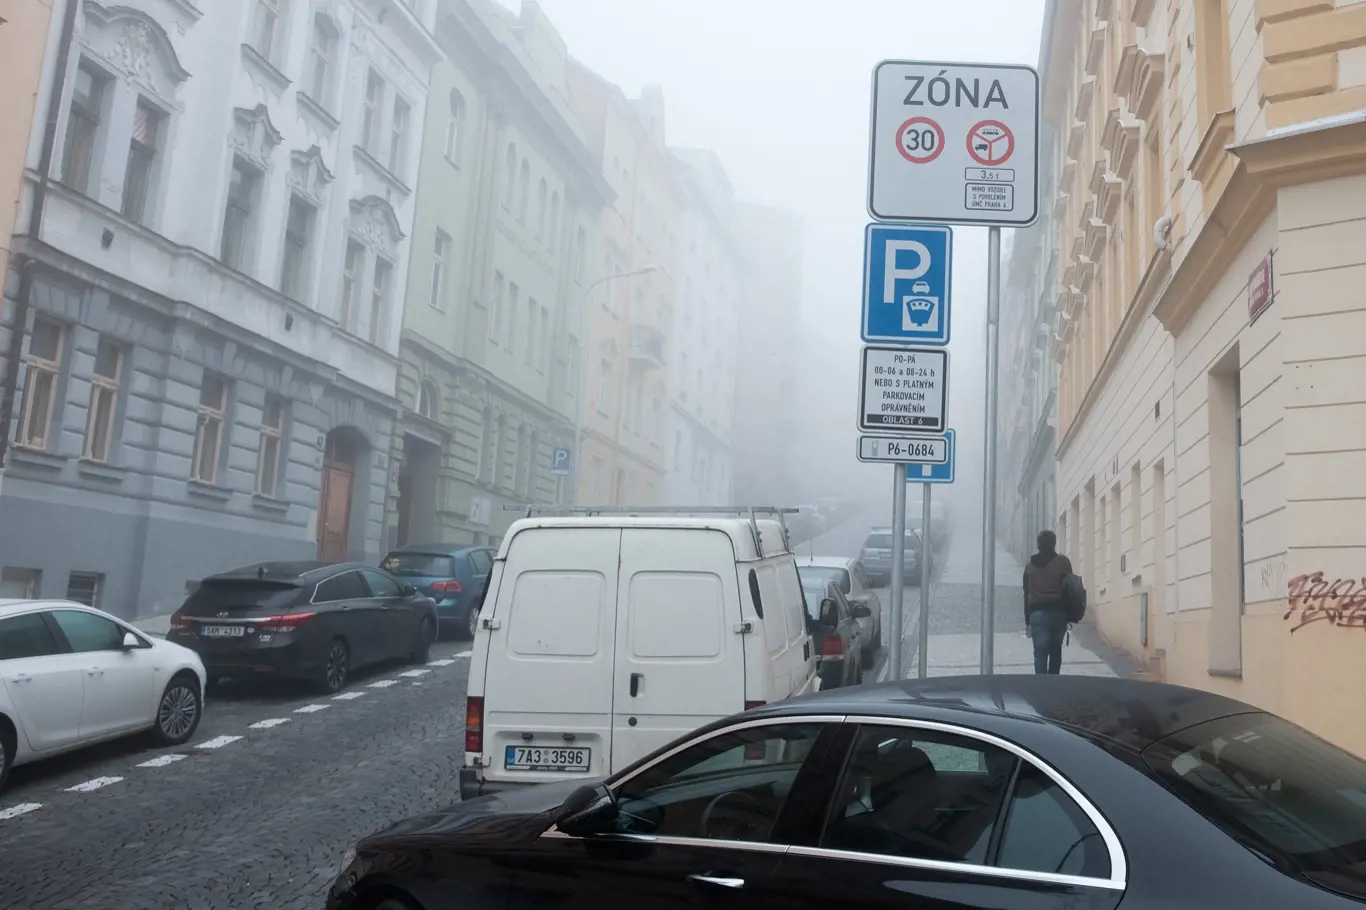 Snímek z nové parkovací zóny na Praze 6